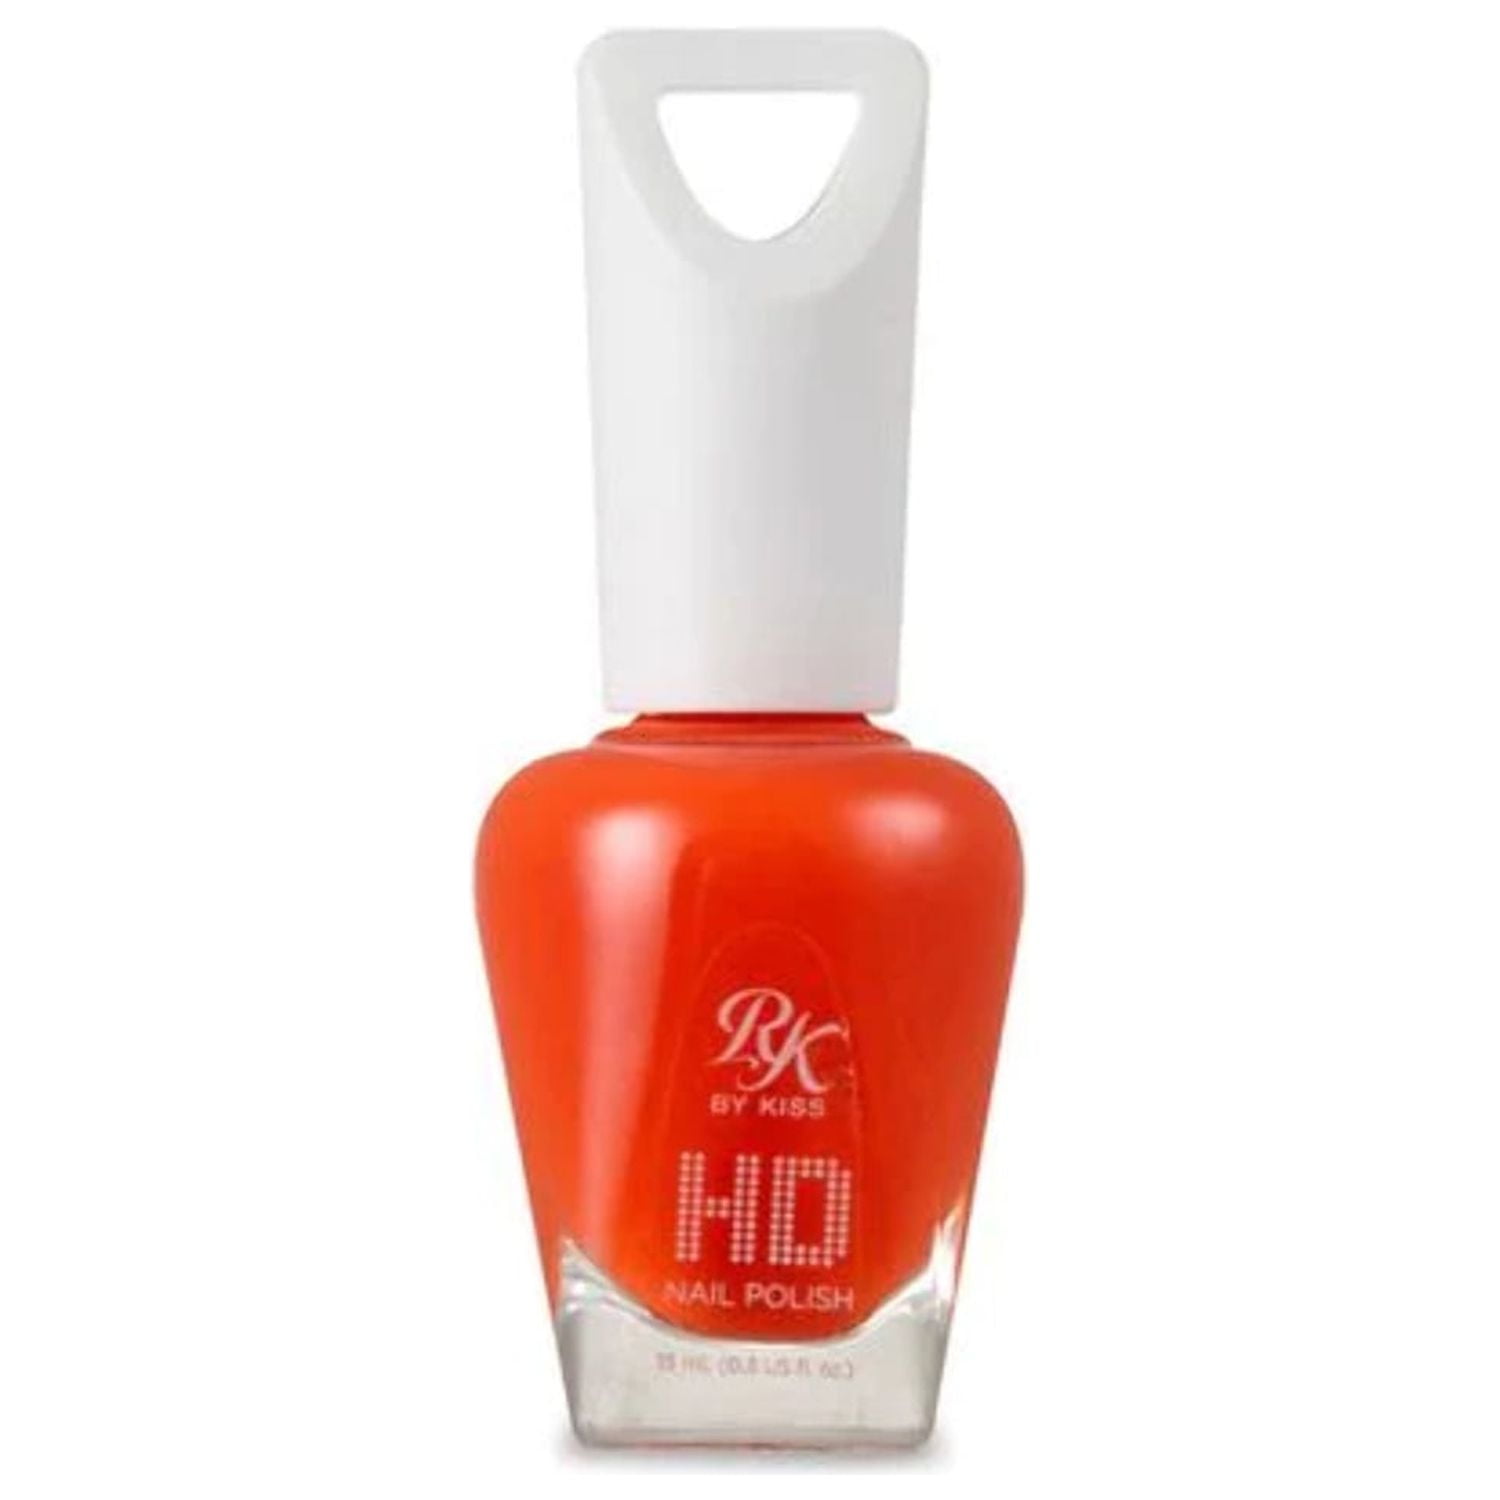 Ultra HD Nail Polish | Nail polish, Elegant nails, Fashion nails